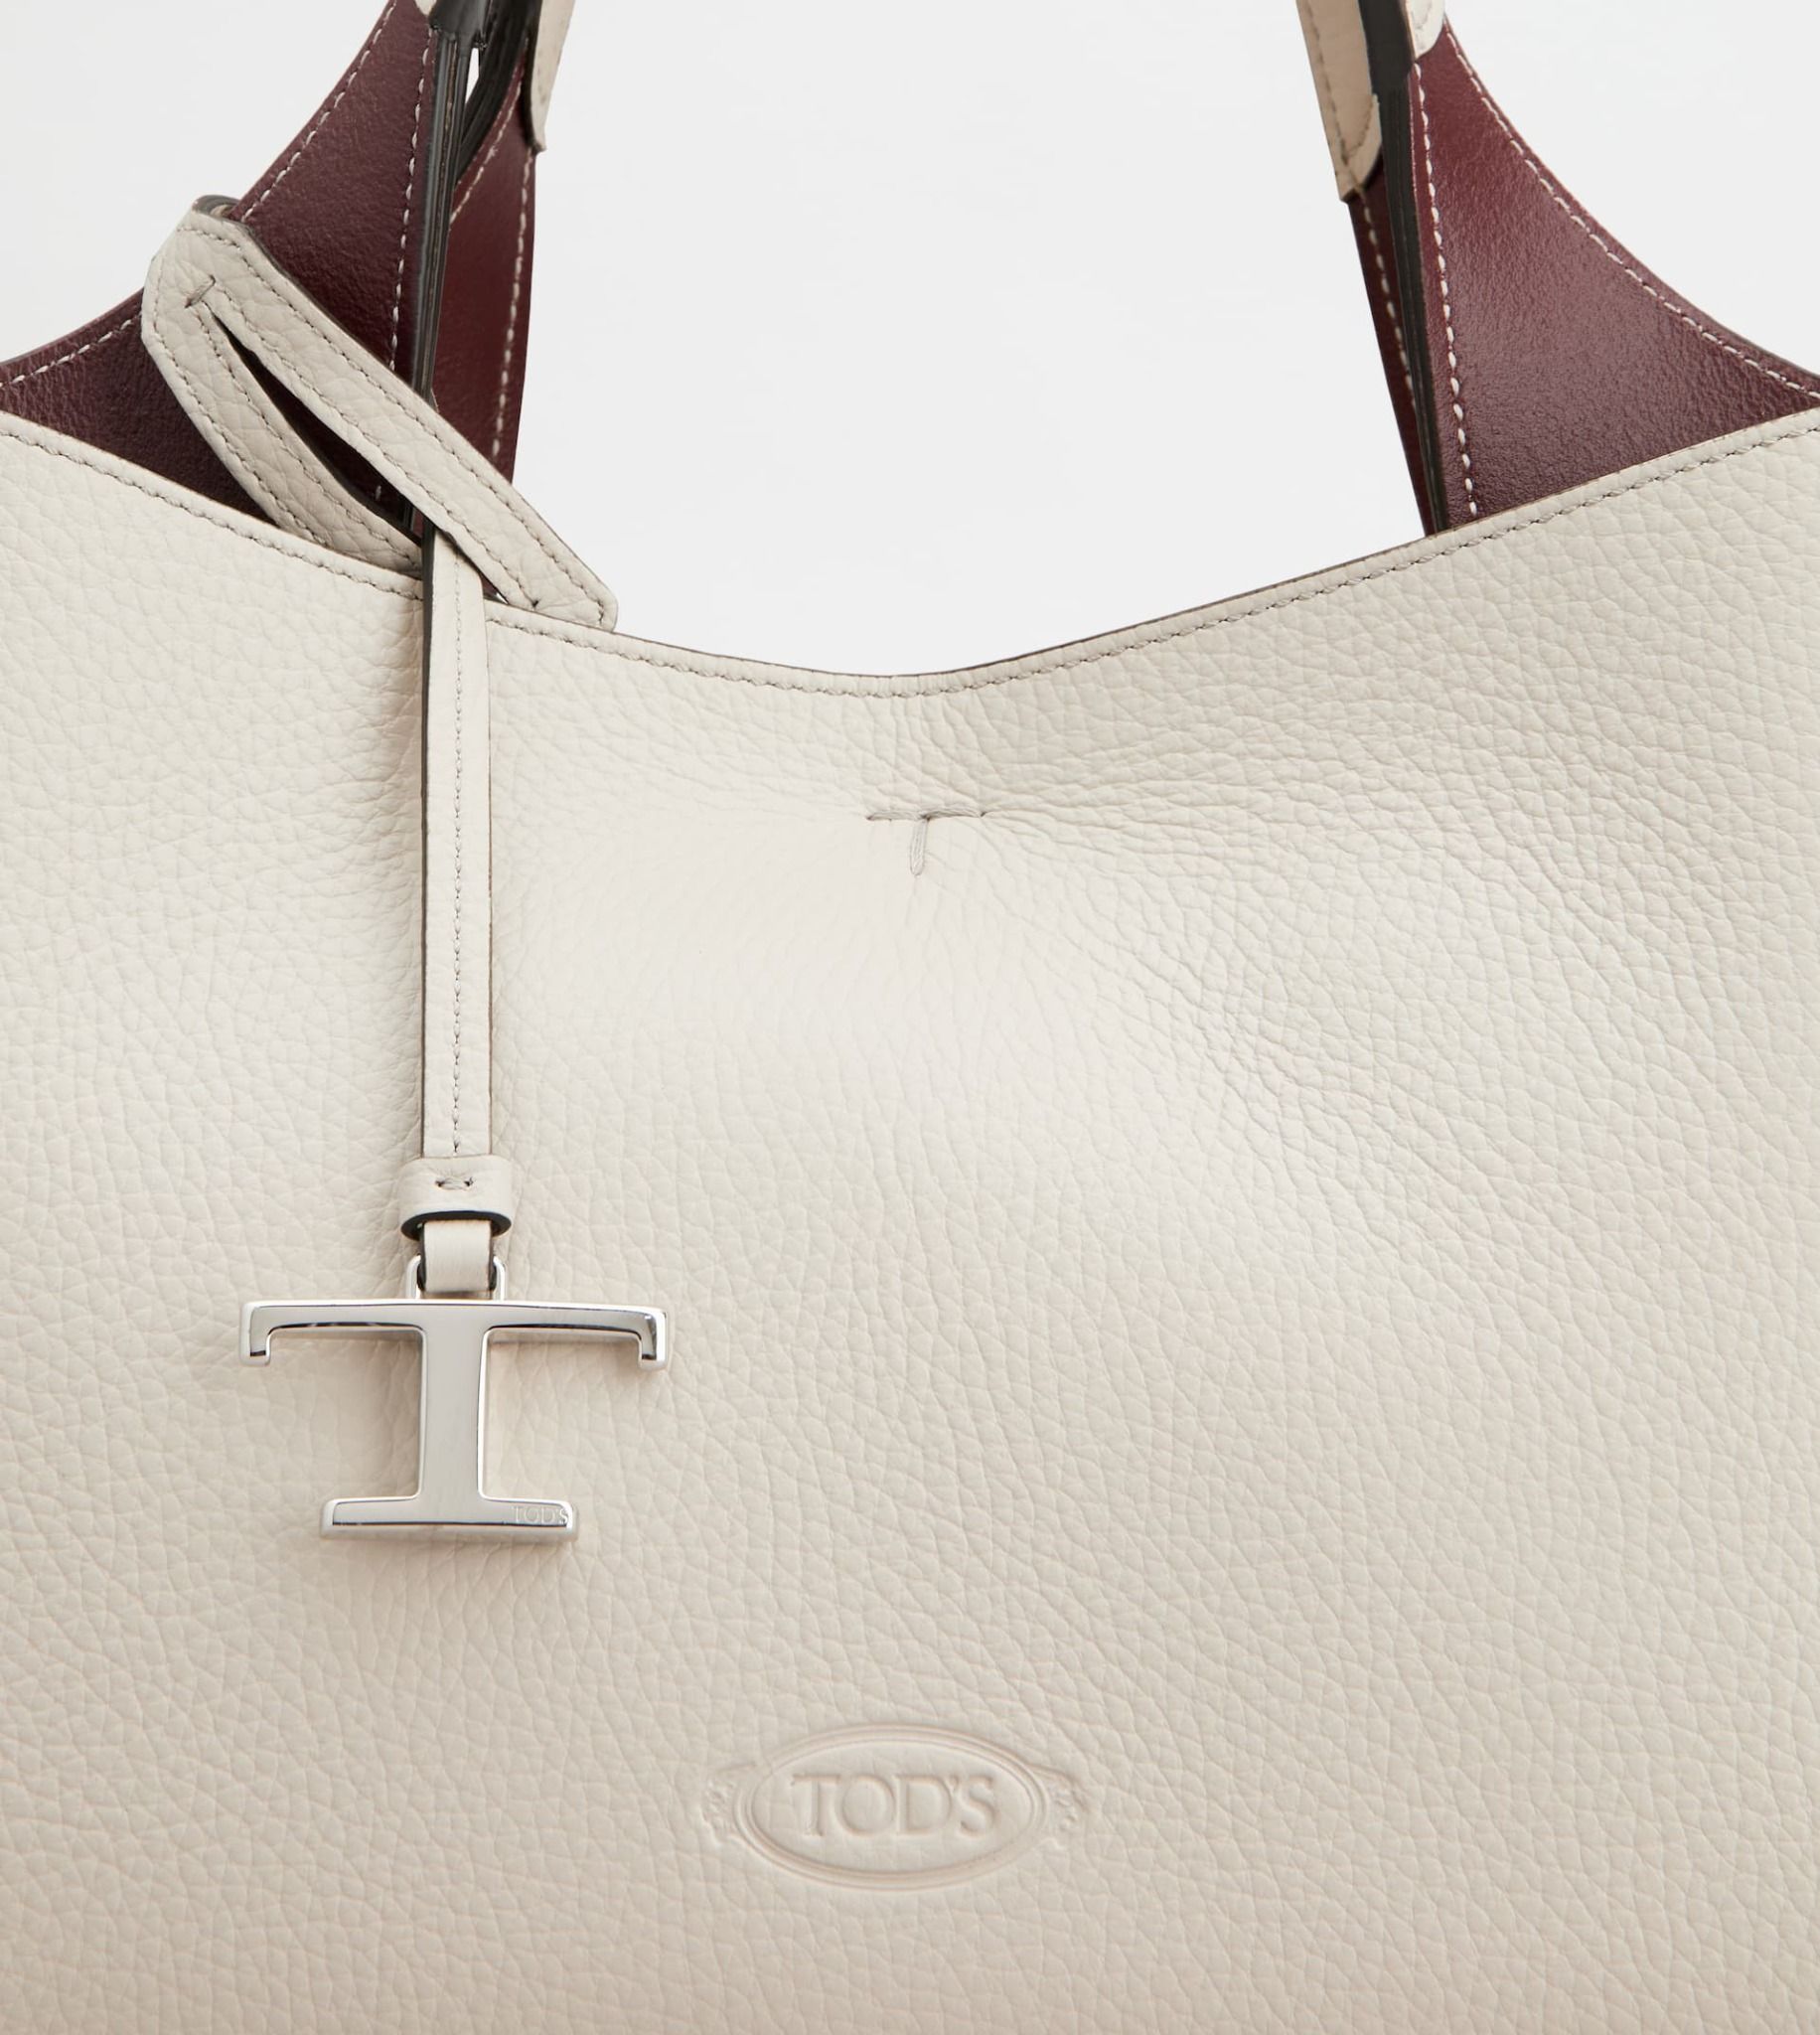  Túi Nữ Tod's Bag Leather Mini 'Off White' 